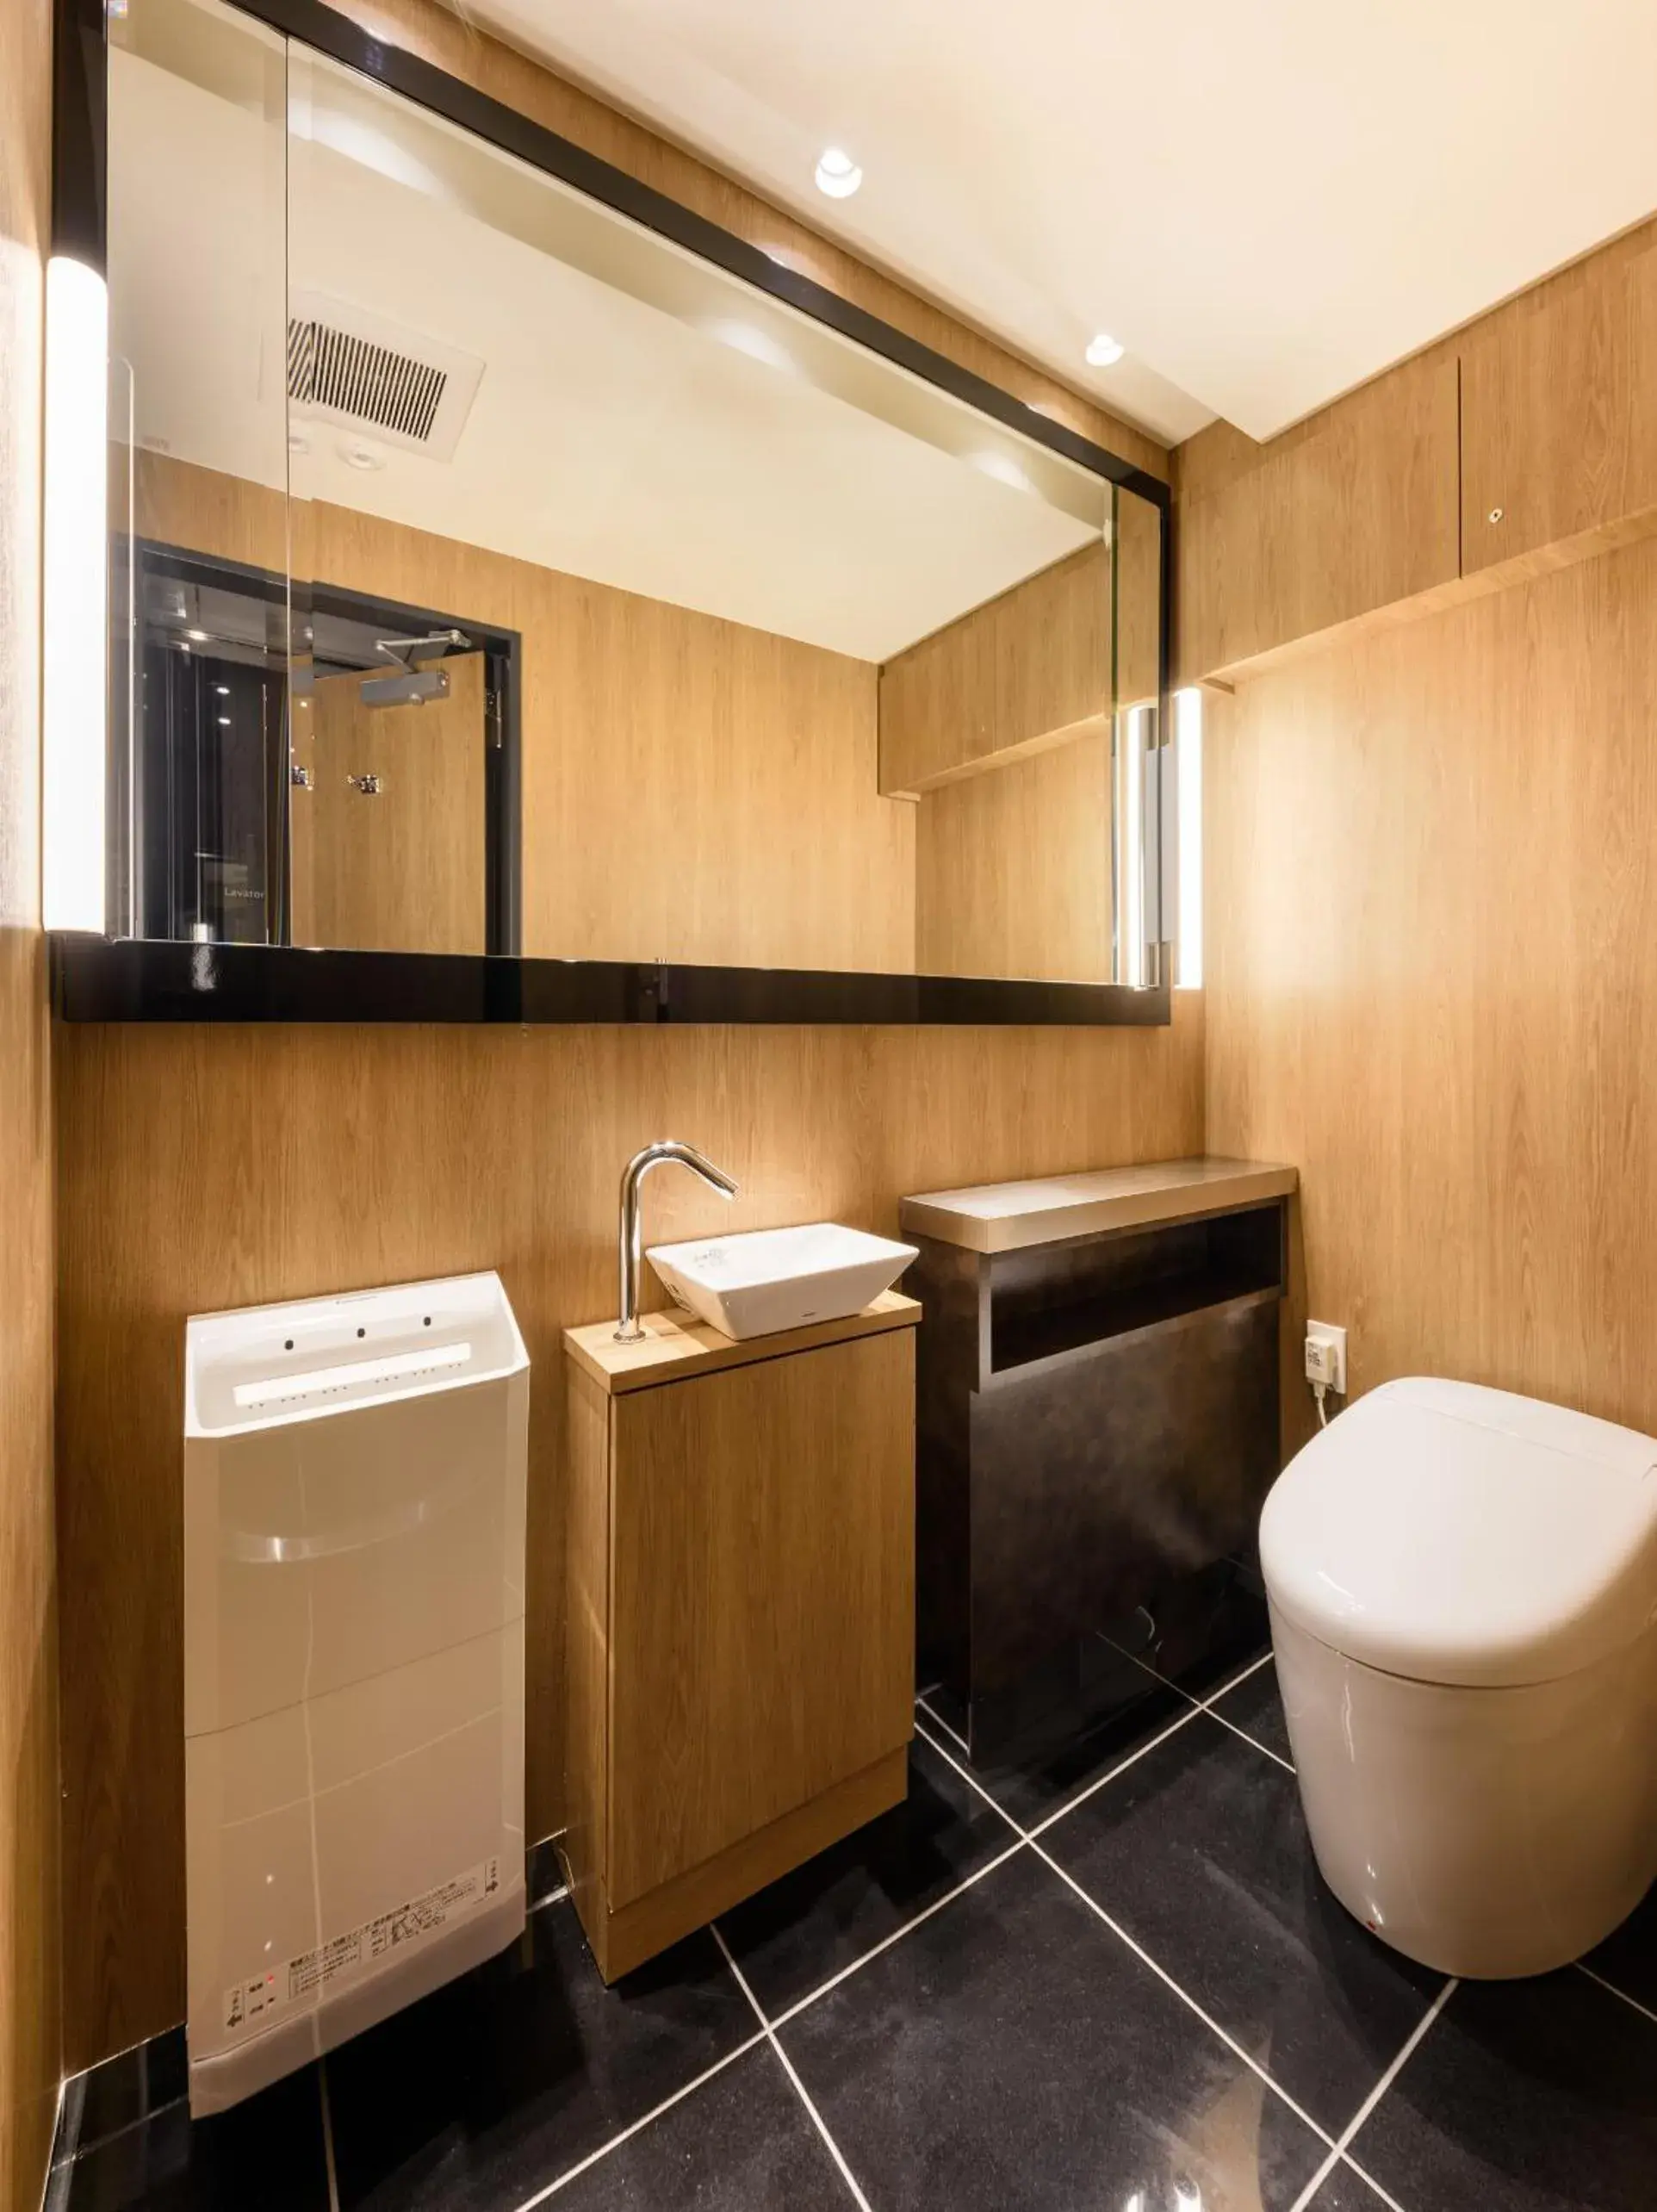 Area and facilities, Bathroom in APA Hotel Hatchobori Shintomicho